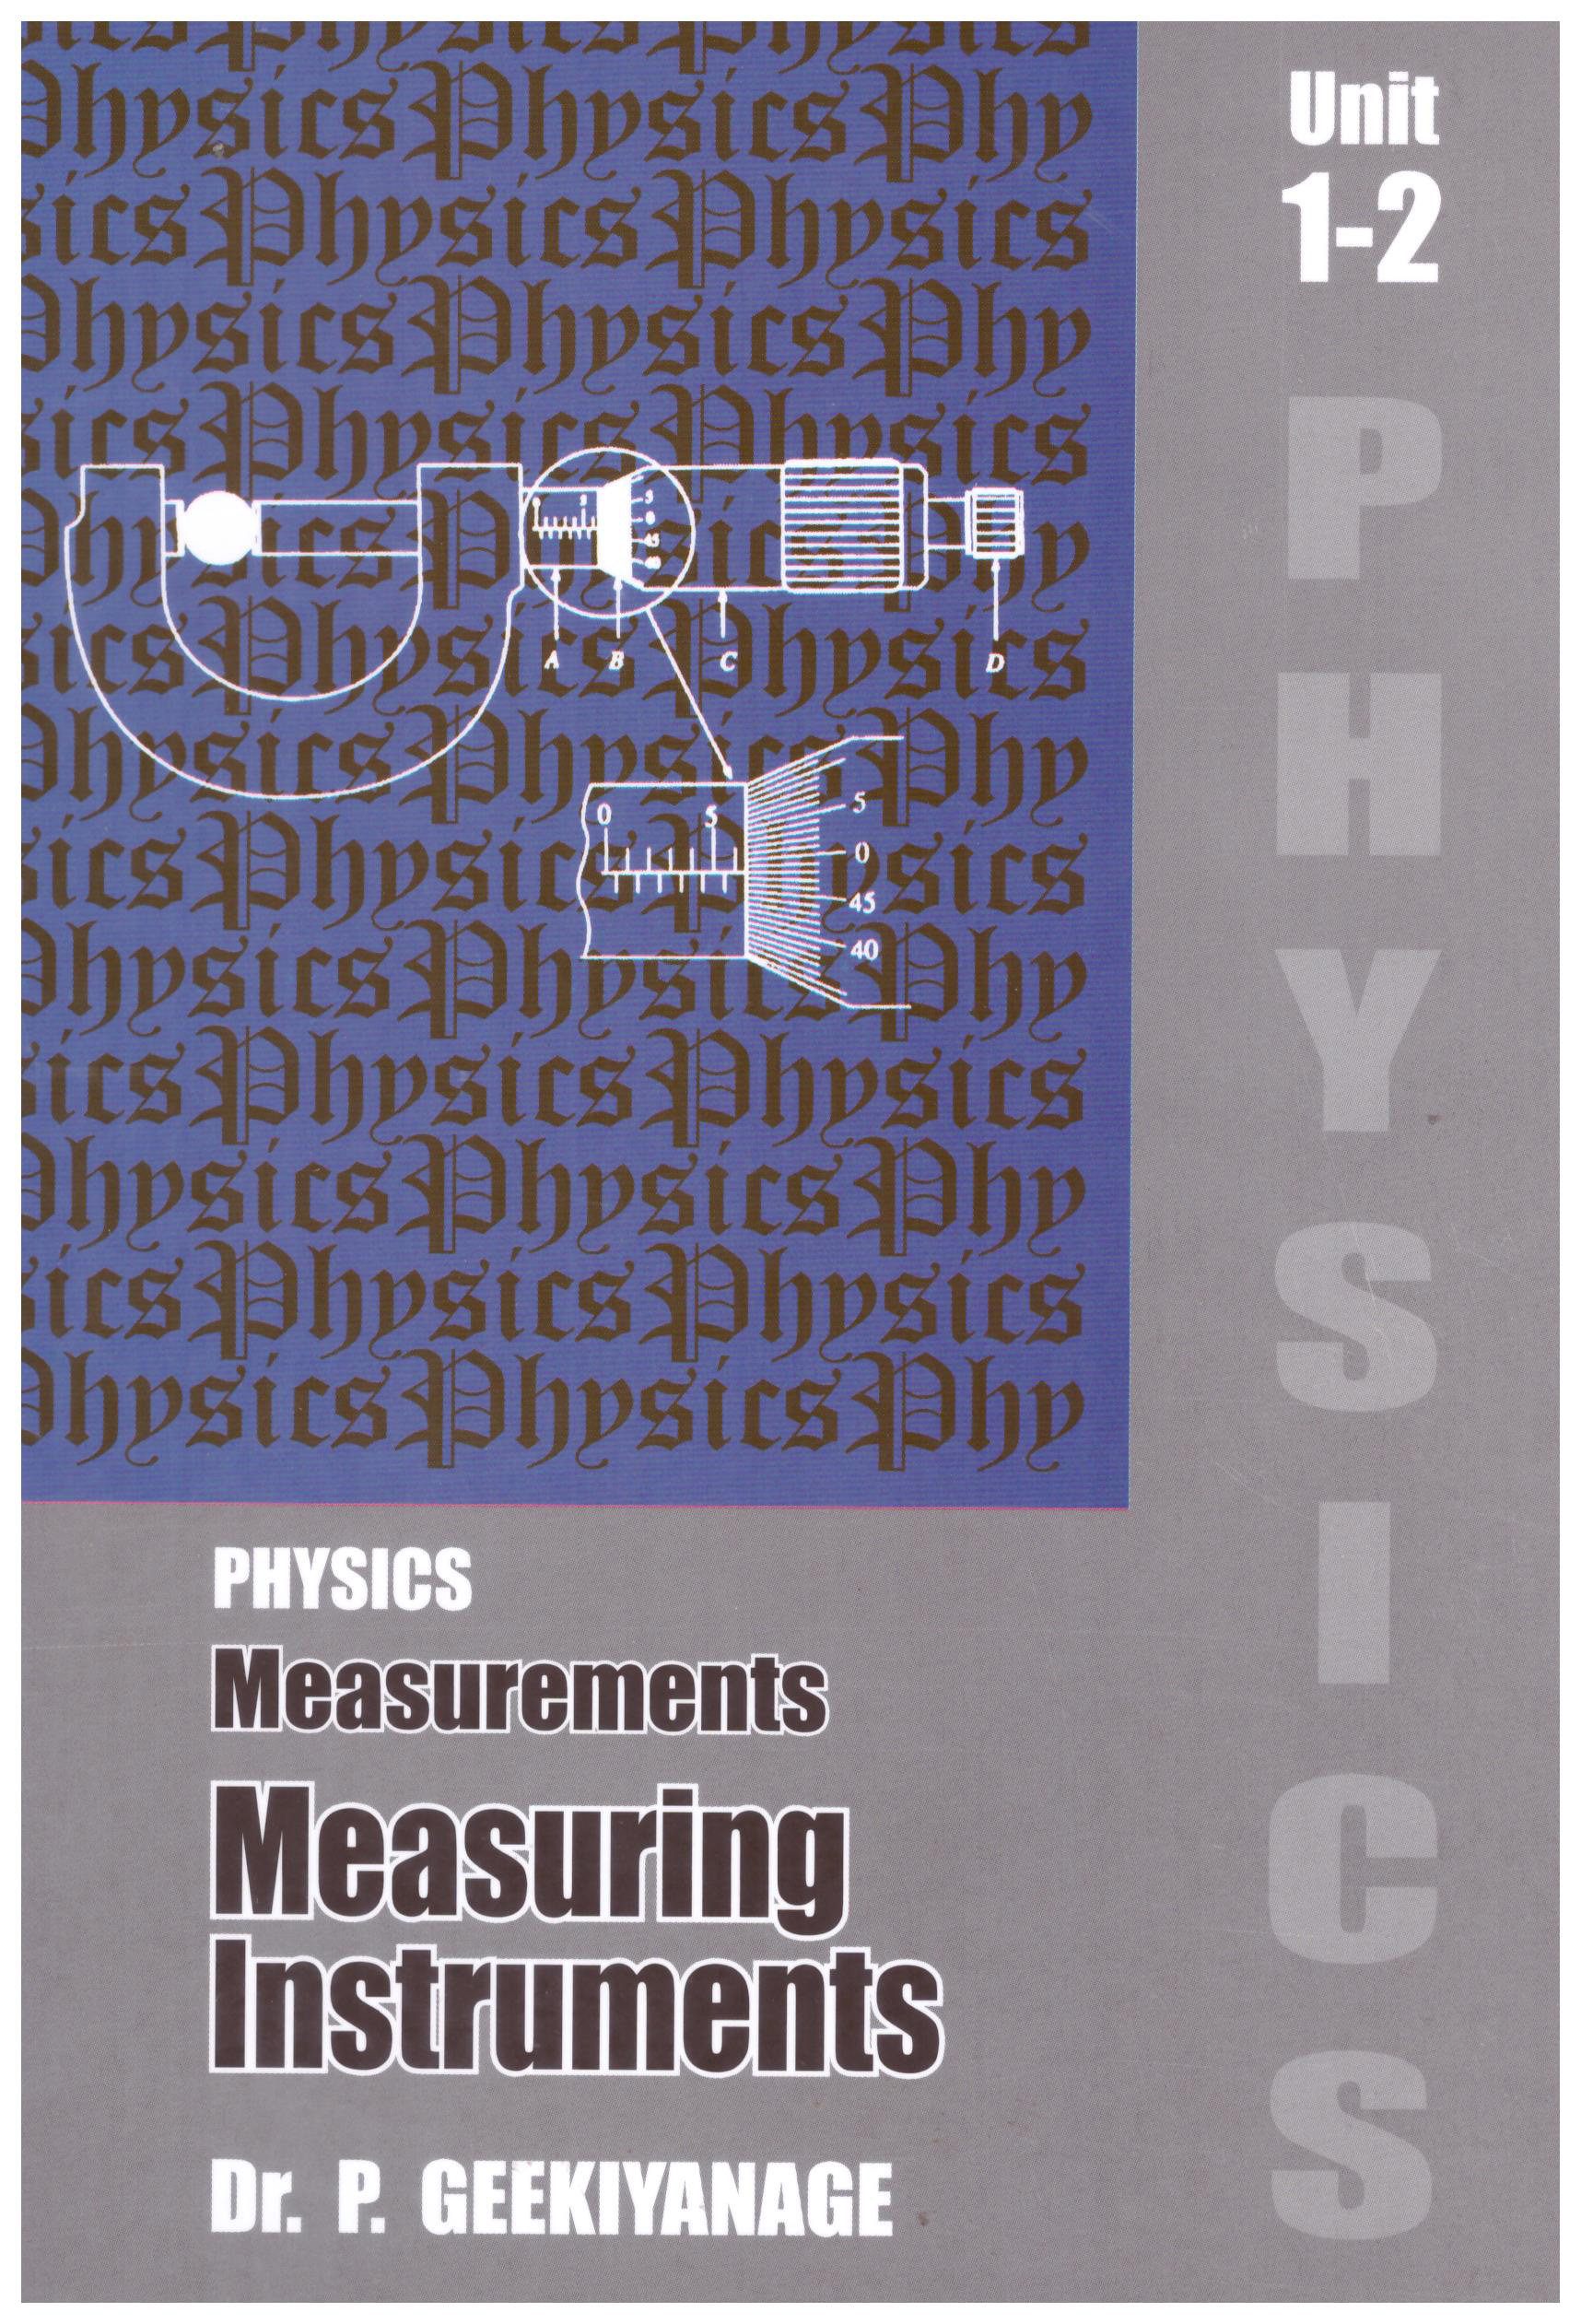 Physics Measurements Measuring Instruments Unit 1-2